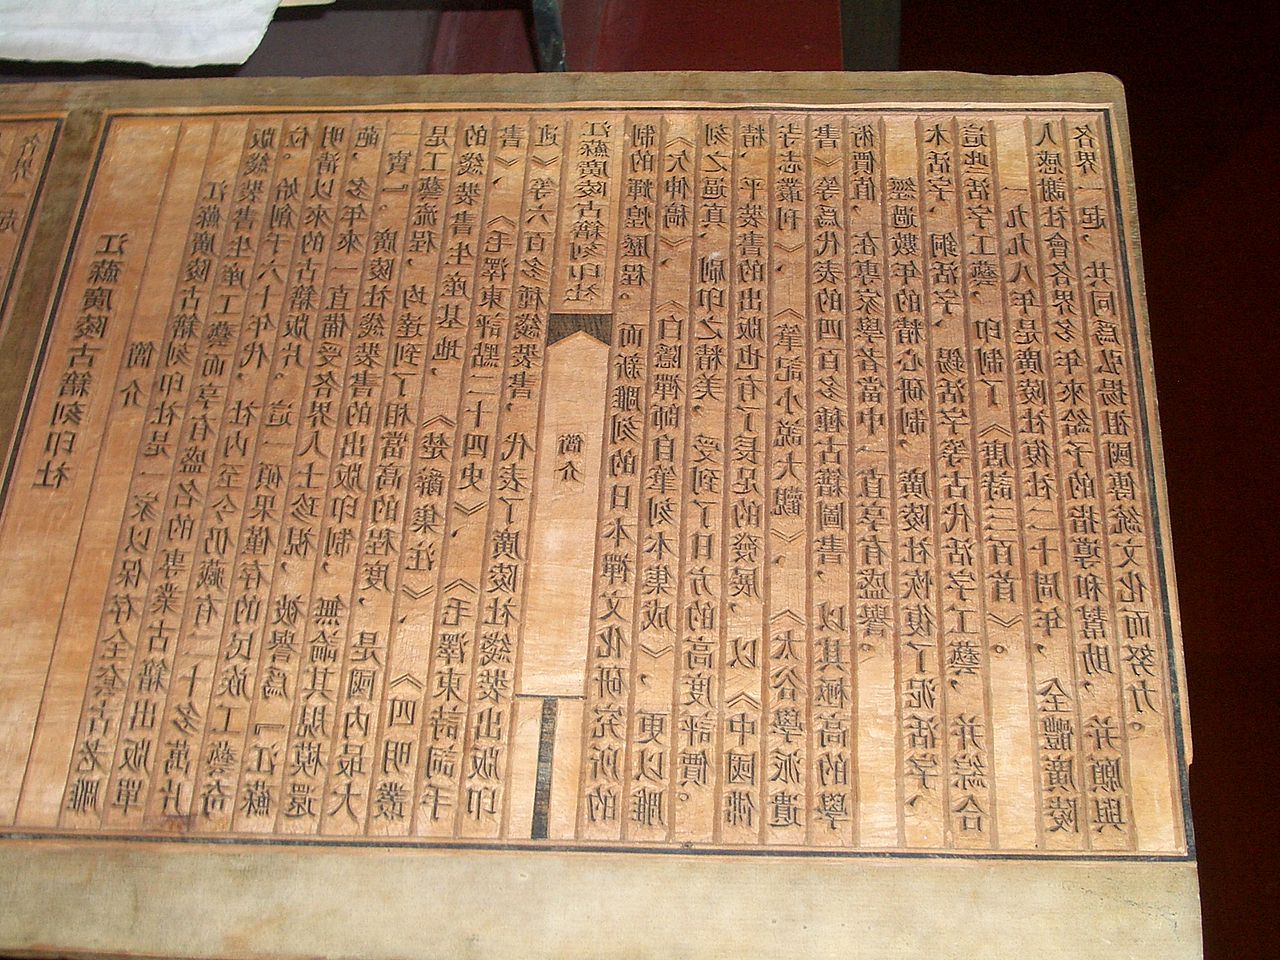 Chinese woodblock printing text